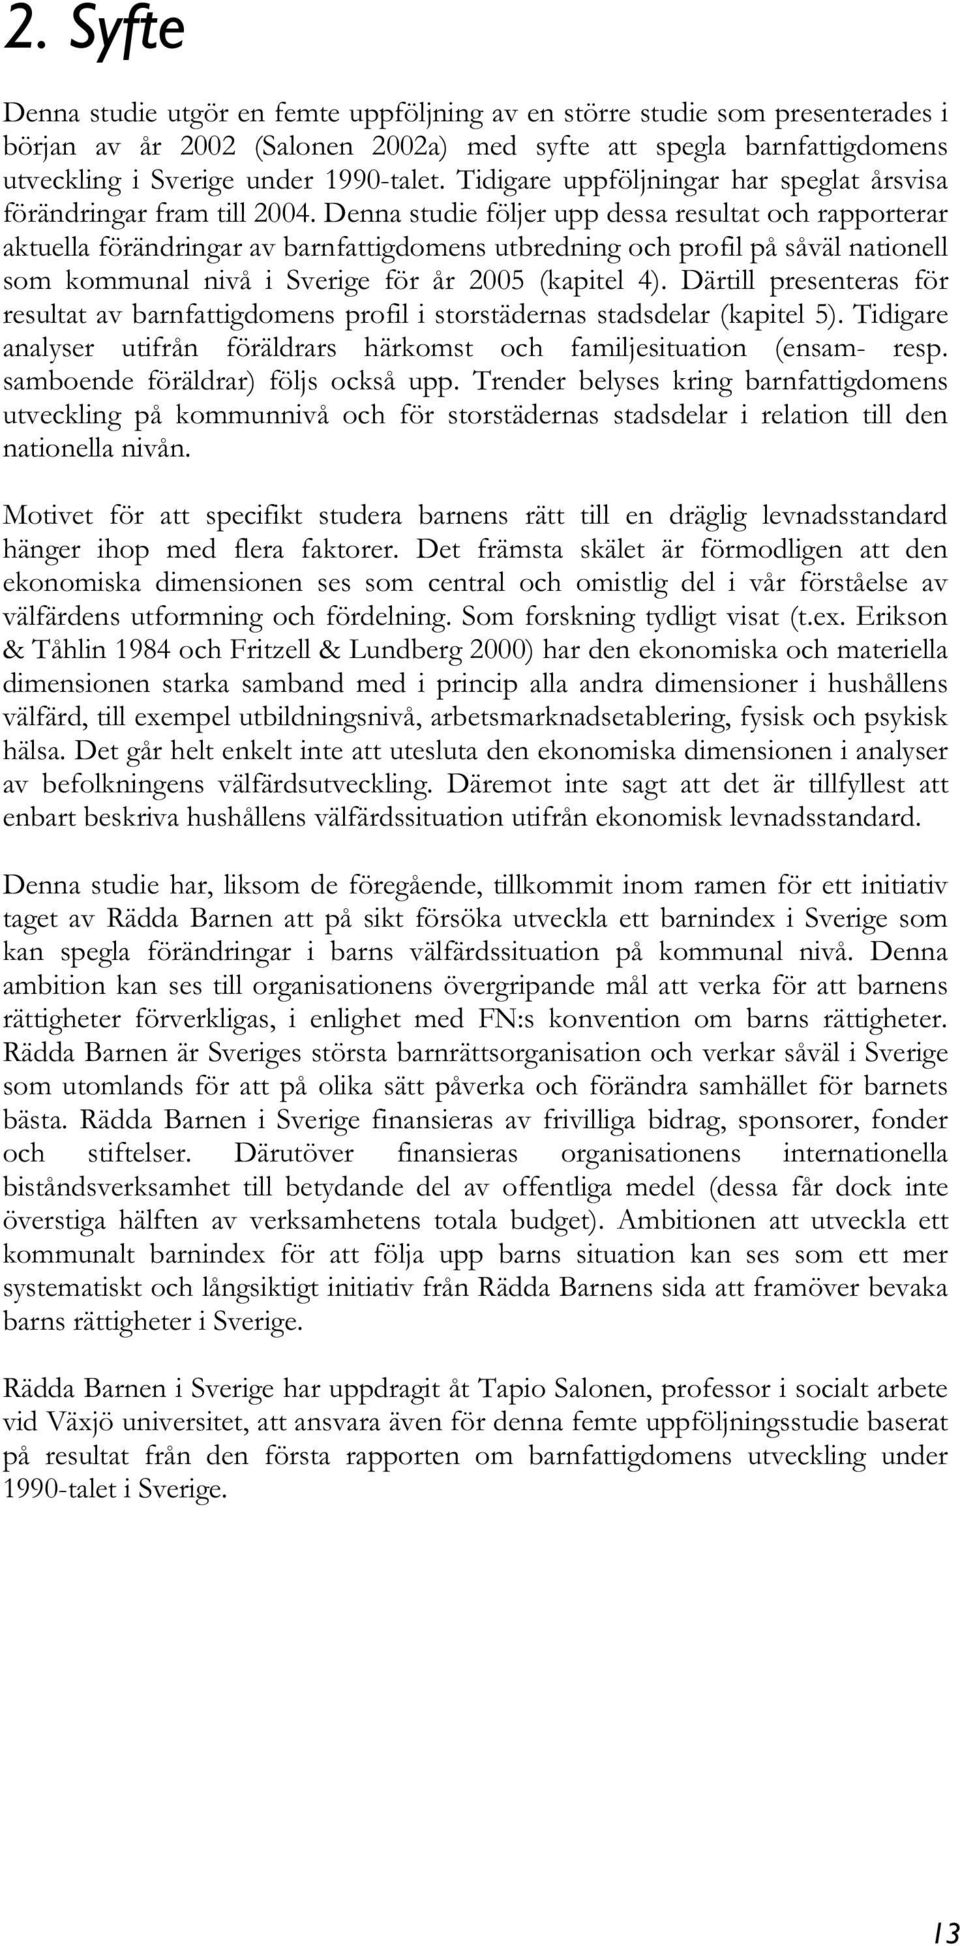 Denna studie följer upp dessa resultat och rapporterar aktuella förändringar av barnfattigdomens utbredning och profil på såväl nationell som kommunal nivå i Sverige för år 2005 (kapitel 4).